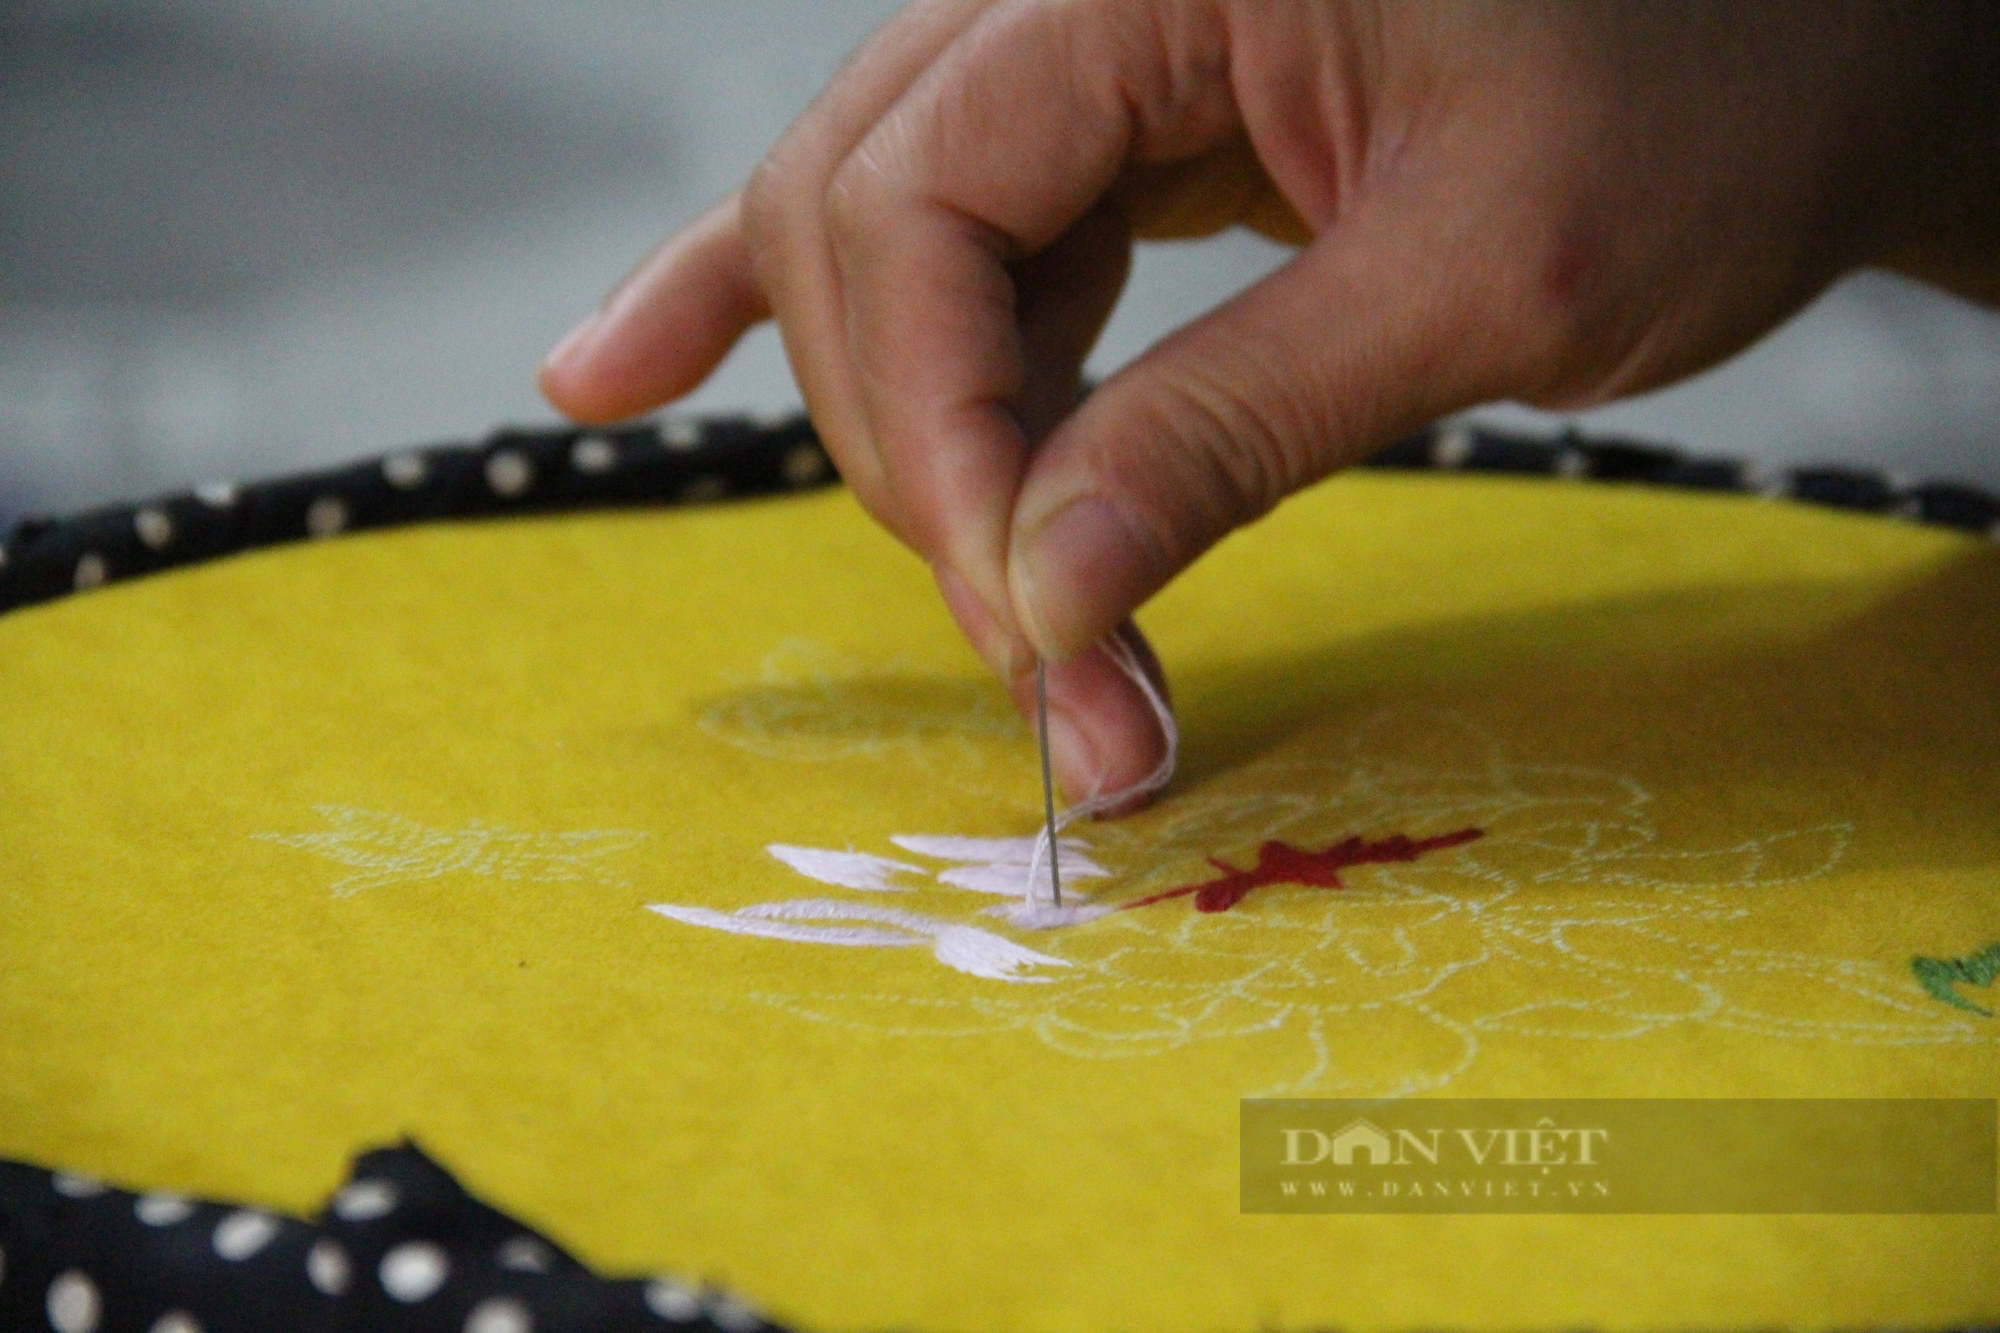 Nghệ nhân làng Quất Động chia sẻ bí quyết thêu tay, tạo ra bức tranh hoàn mỹ - Ảnh 5.